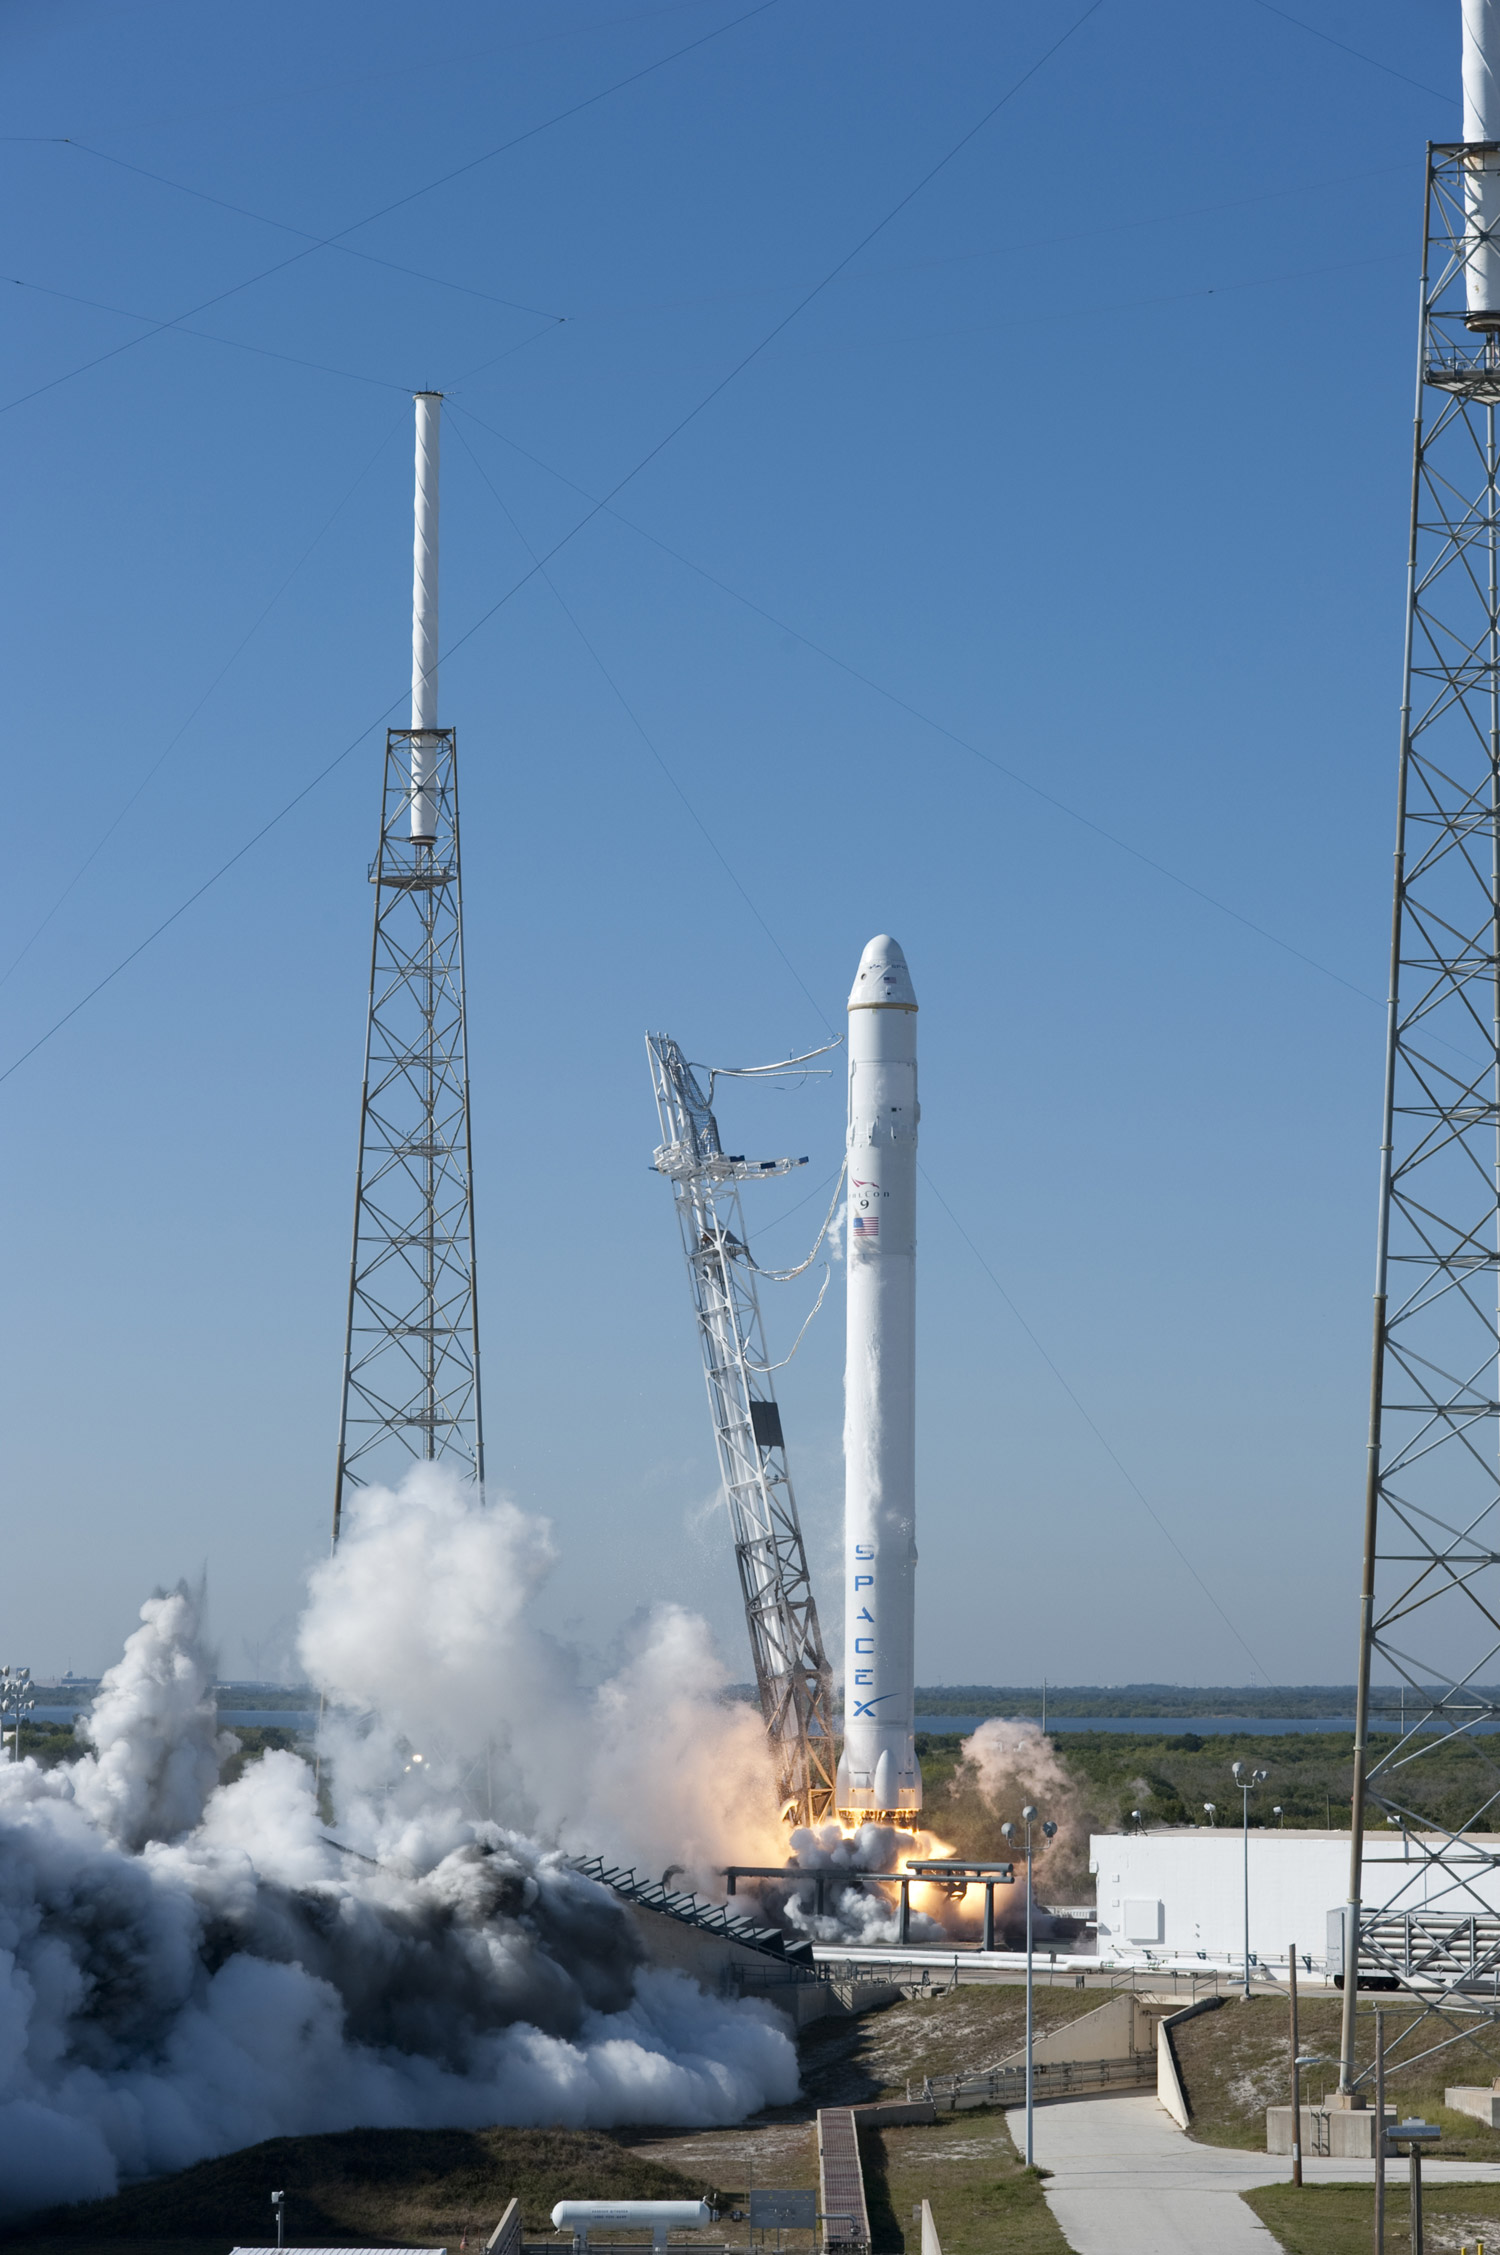 Le lanceur Falcon 9 a décollé du complexe LC 40 de cap Canaveral à 15 h 43 TU. La capsule Dragon a été larguée suivant le plan de vol de la mission. Elle a tourné deux fois autour de la Terre avant d’entamer sa traversée dans l’atmosphère et d’atterrir au large des côtes californiennes à 19 h 04 TU. © Nasa/Tony Gray & Kevin O'Connell